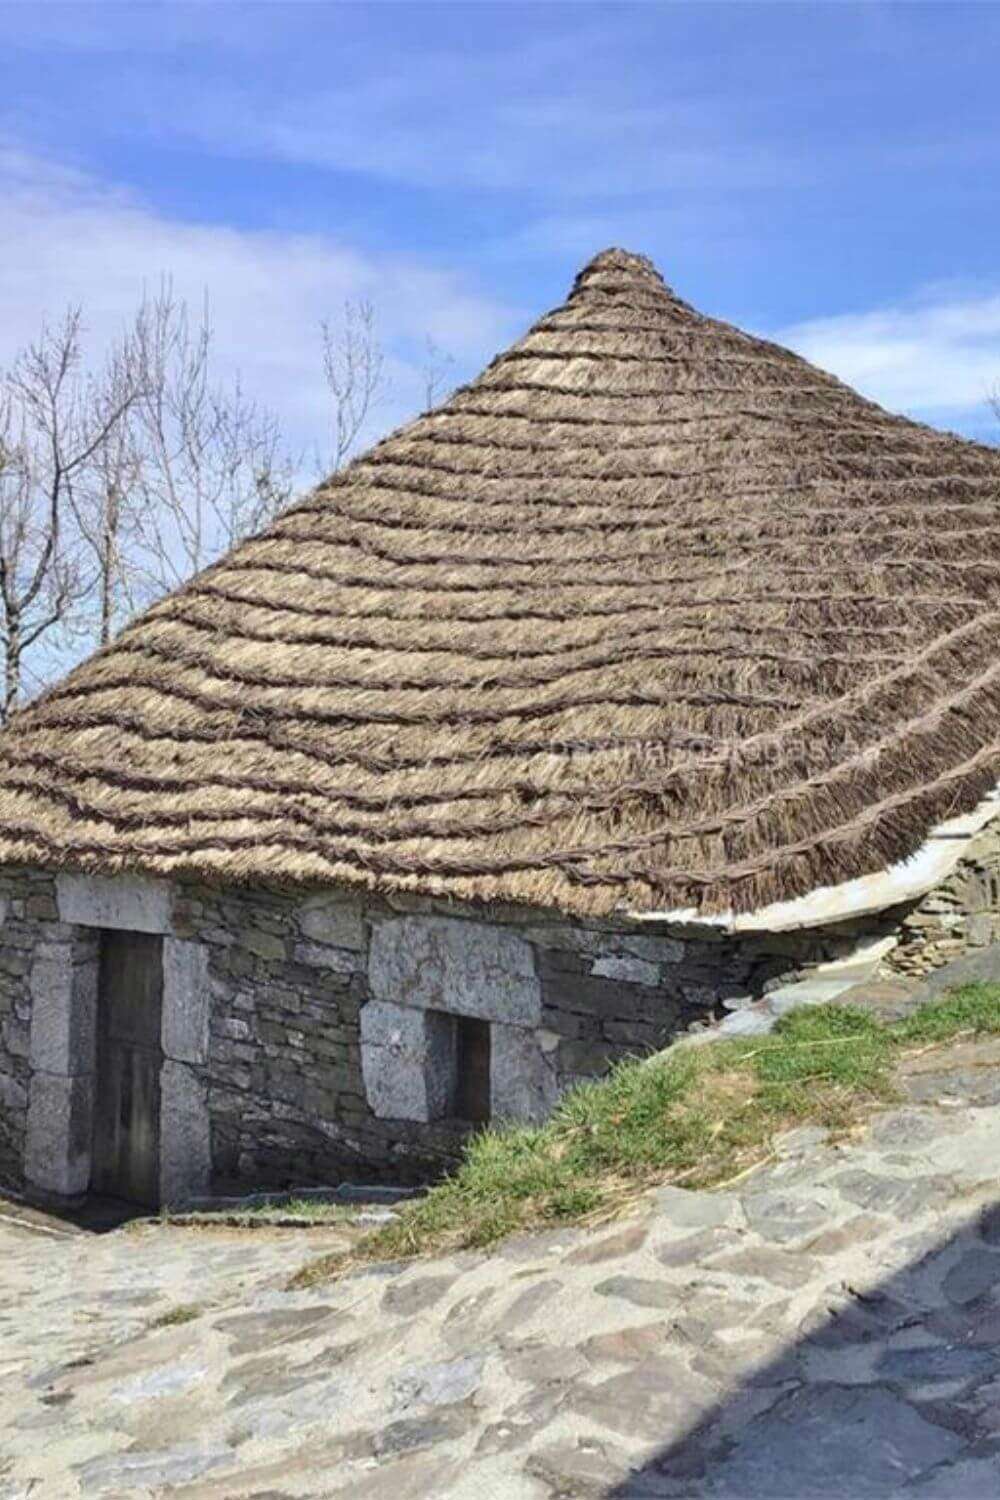 pueblos bonitos de asturias piedrafita del cebrero lugo